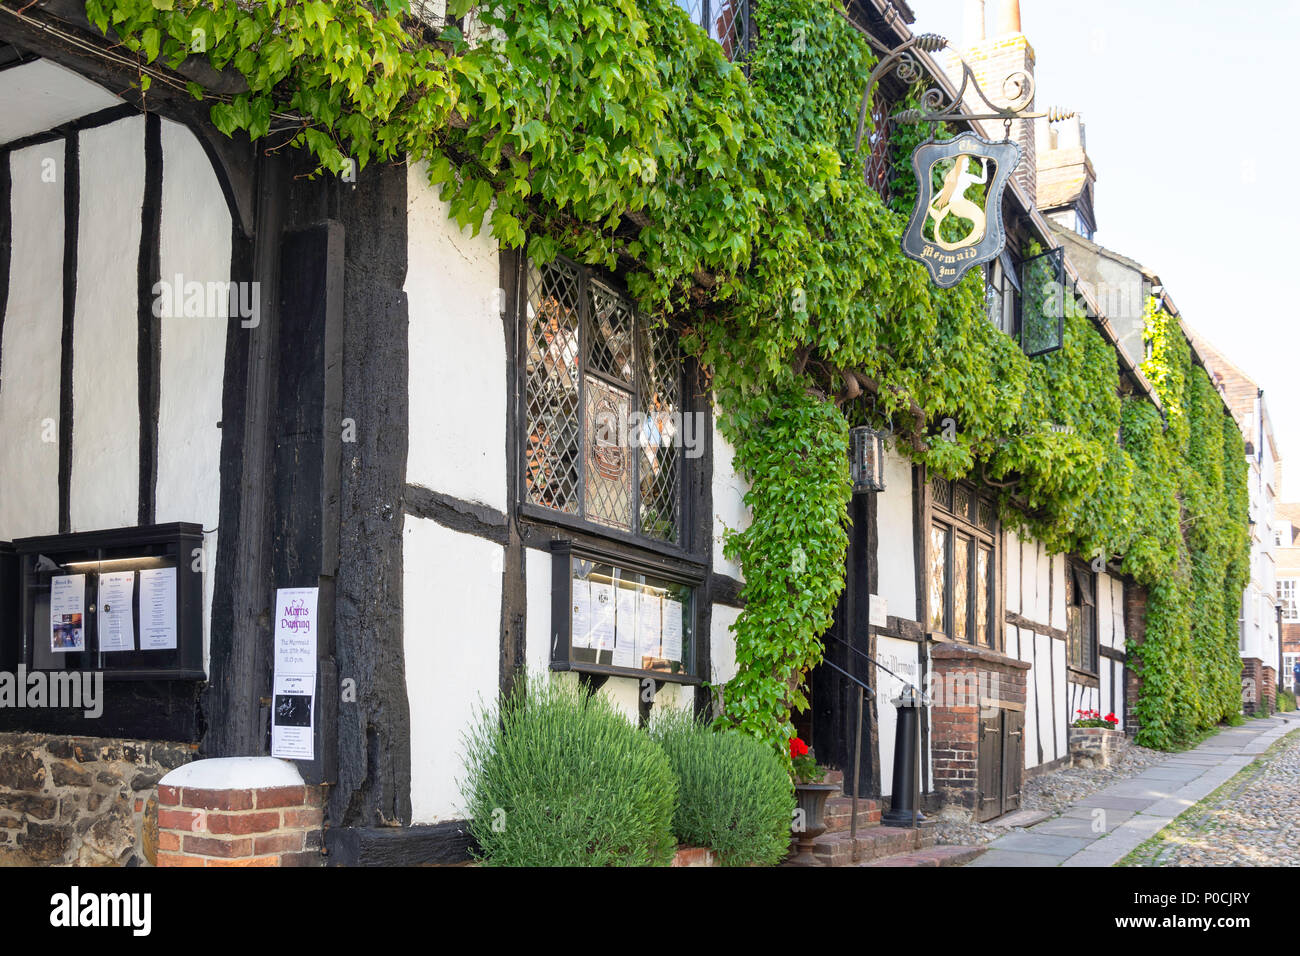 The 12th century Mermaid Inn, Mermaid Street, Rye, East Sussex, England, United Kingdom Stock Photo